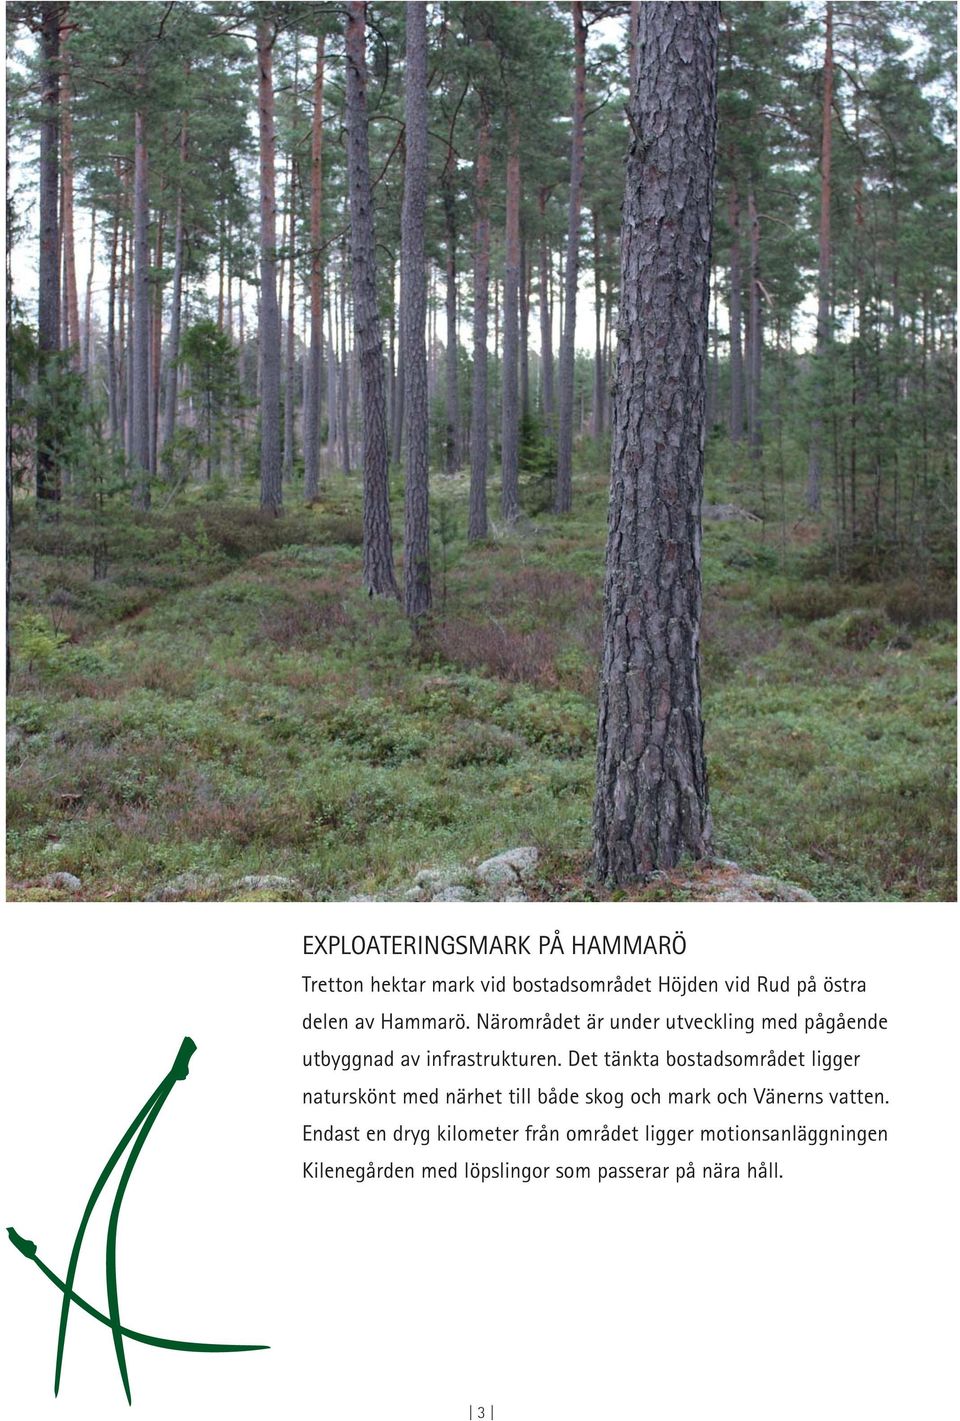 Det tänkta bostadsområdet ligger naturskönt med närhet till både skog och mark och Vänerns vatten.